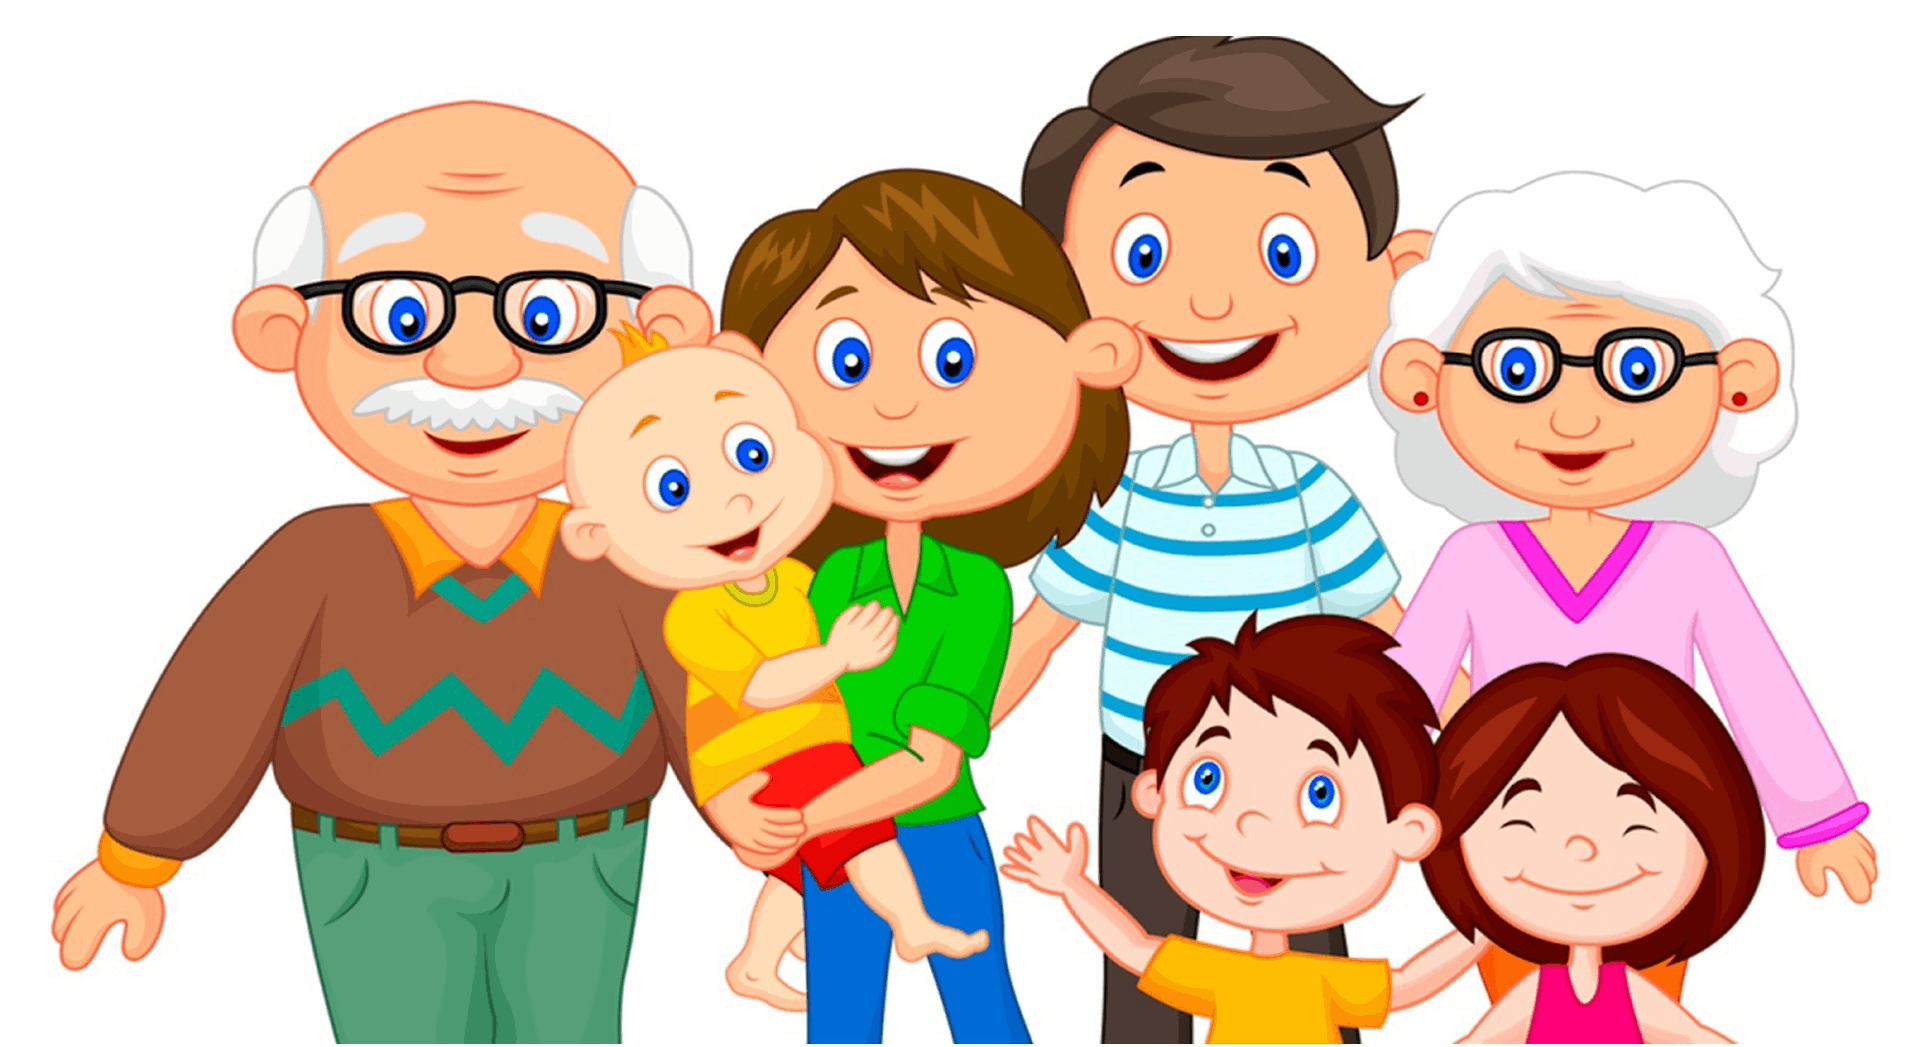 Картинка родители. Ребенок в семье. Моя семья. Иллюстрации о семье для дошкольников. Картины с изображением детей и семьи.